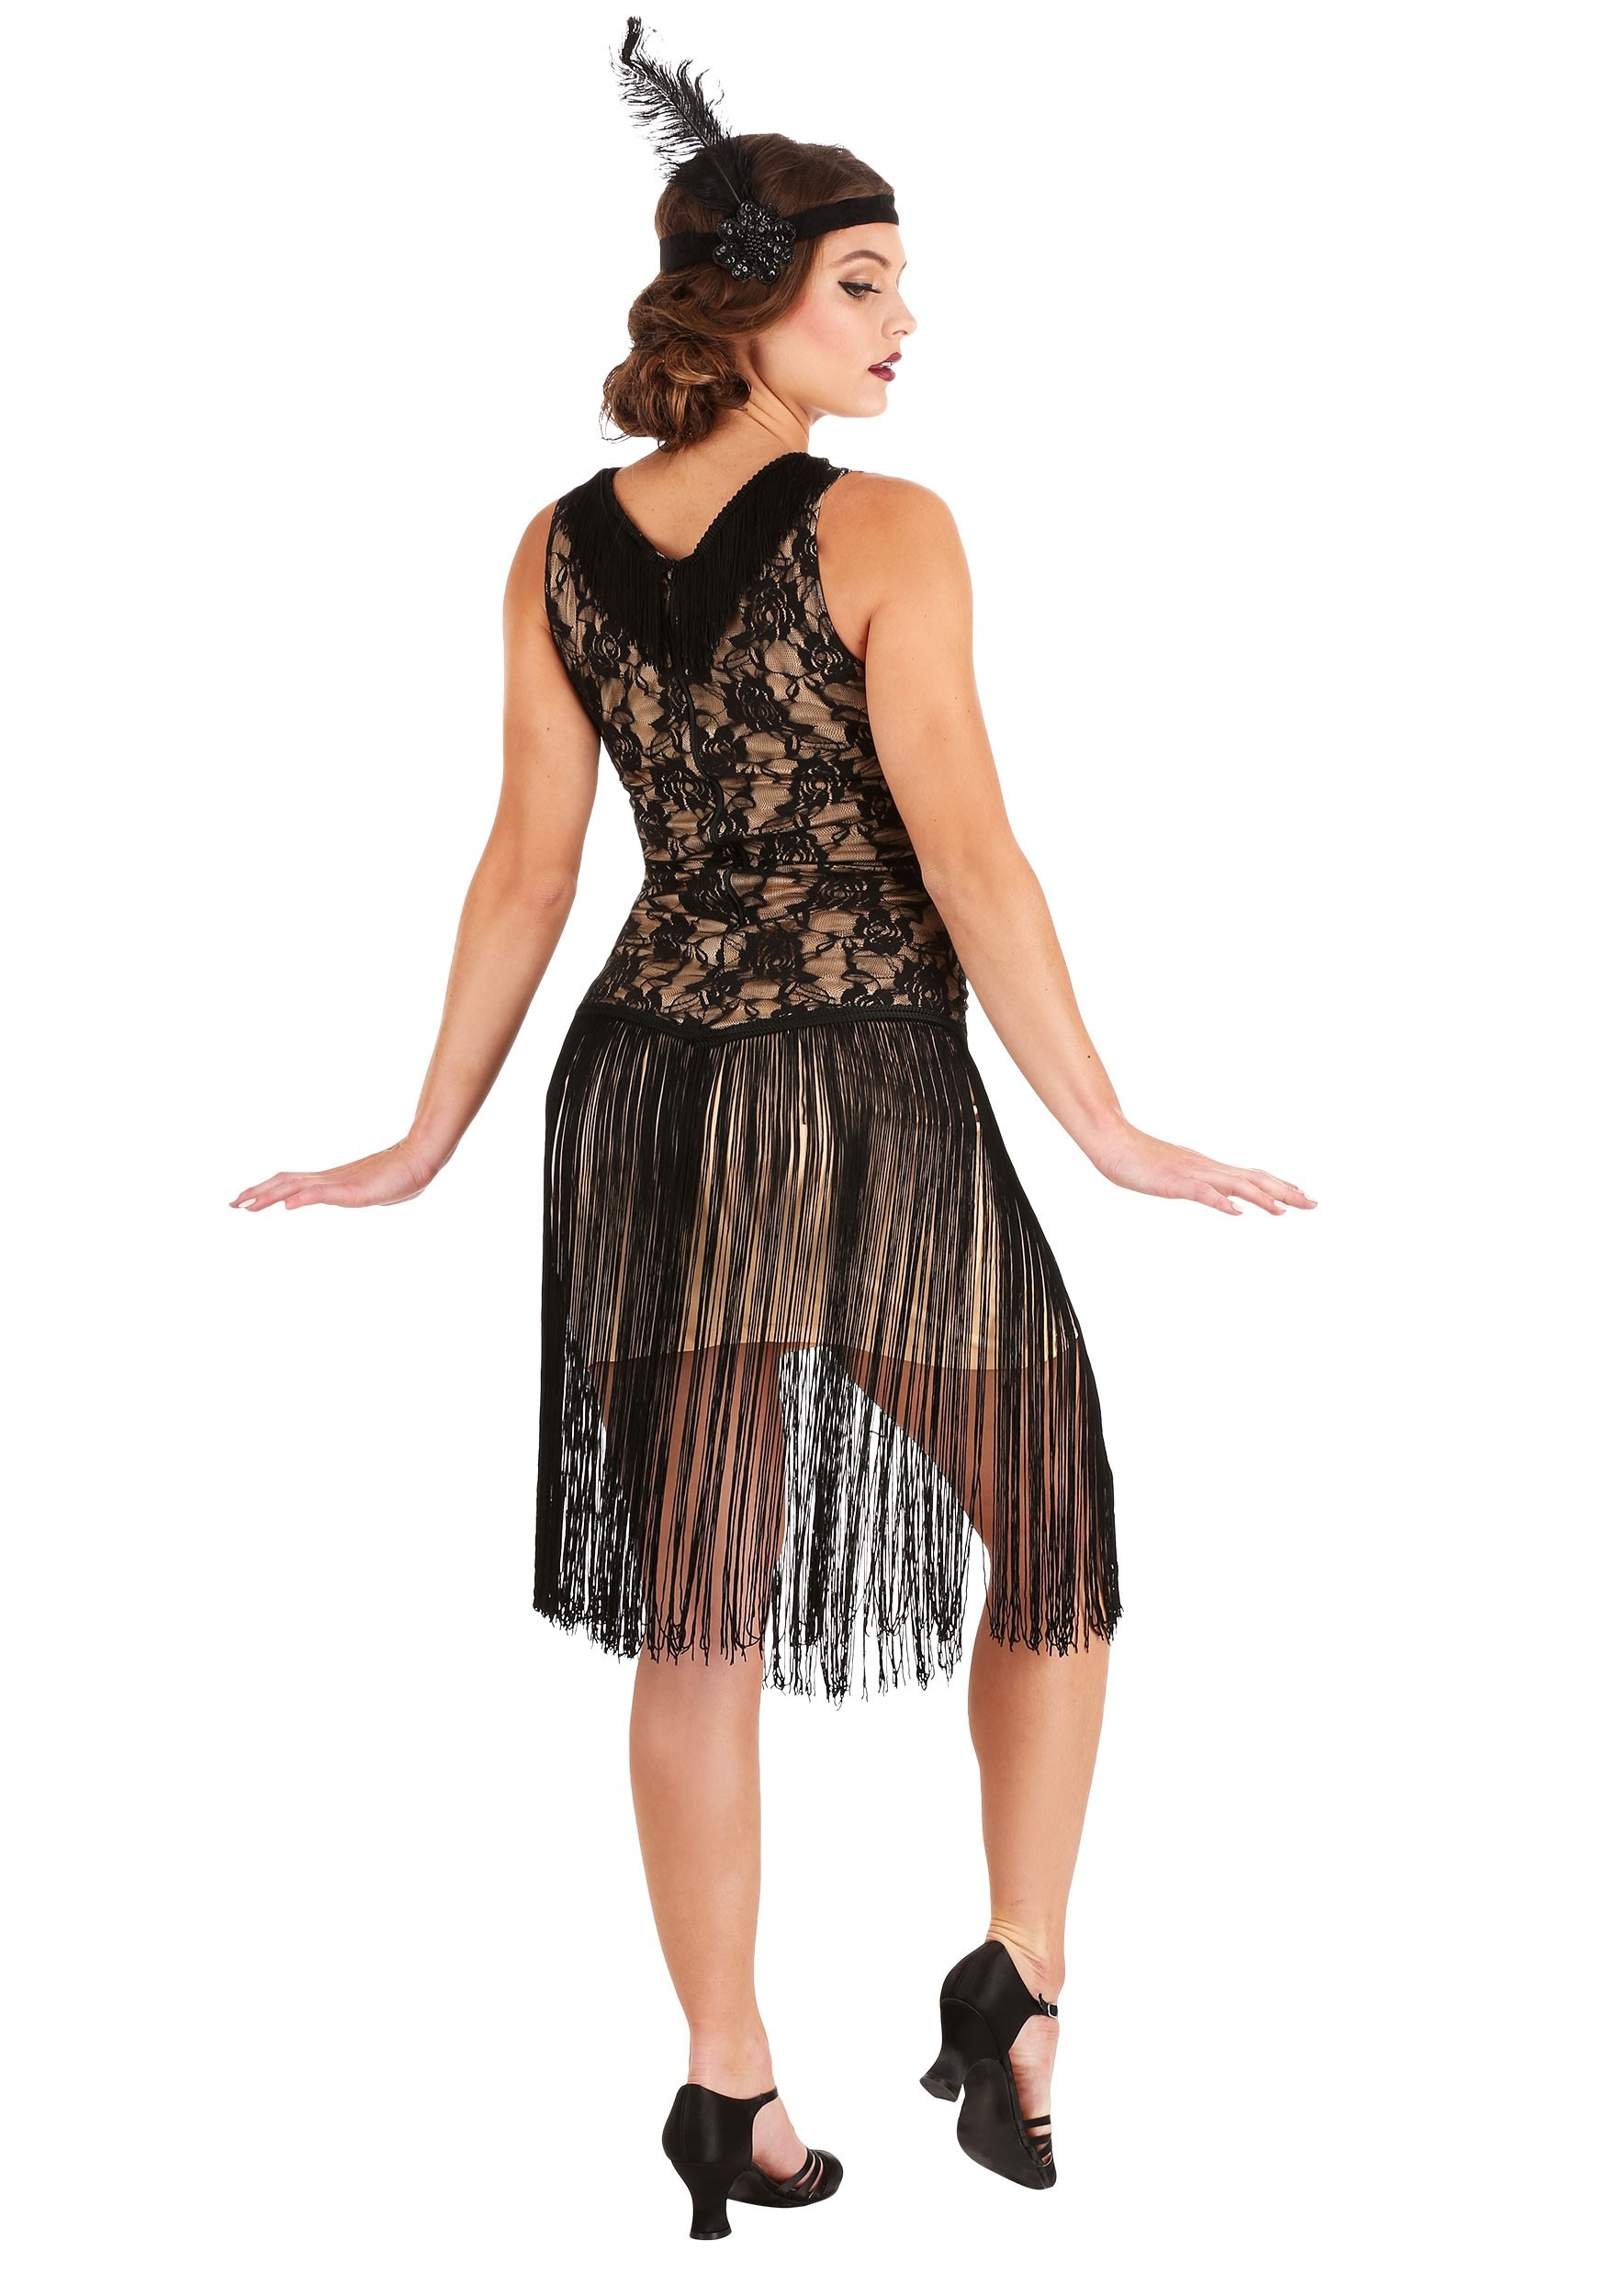 Plus Size Speakeasy Flapper Fancy Dress Costume For Women 1X 2X